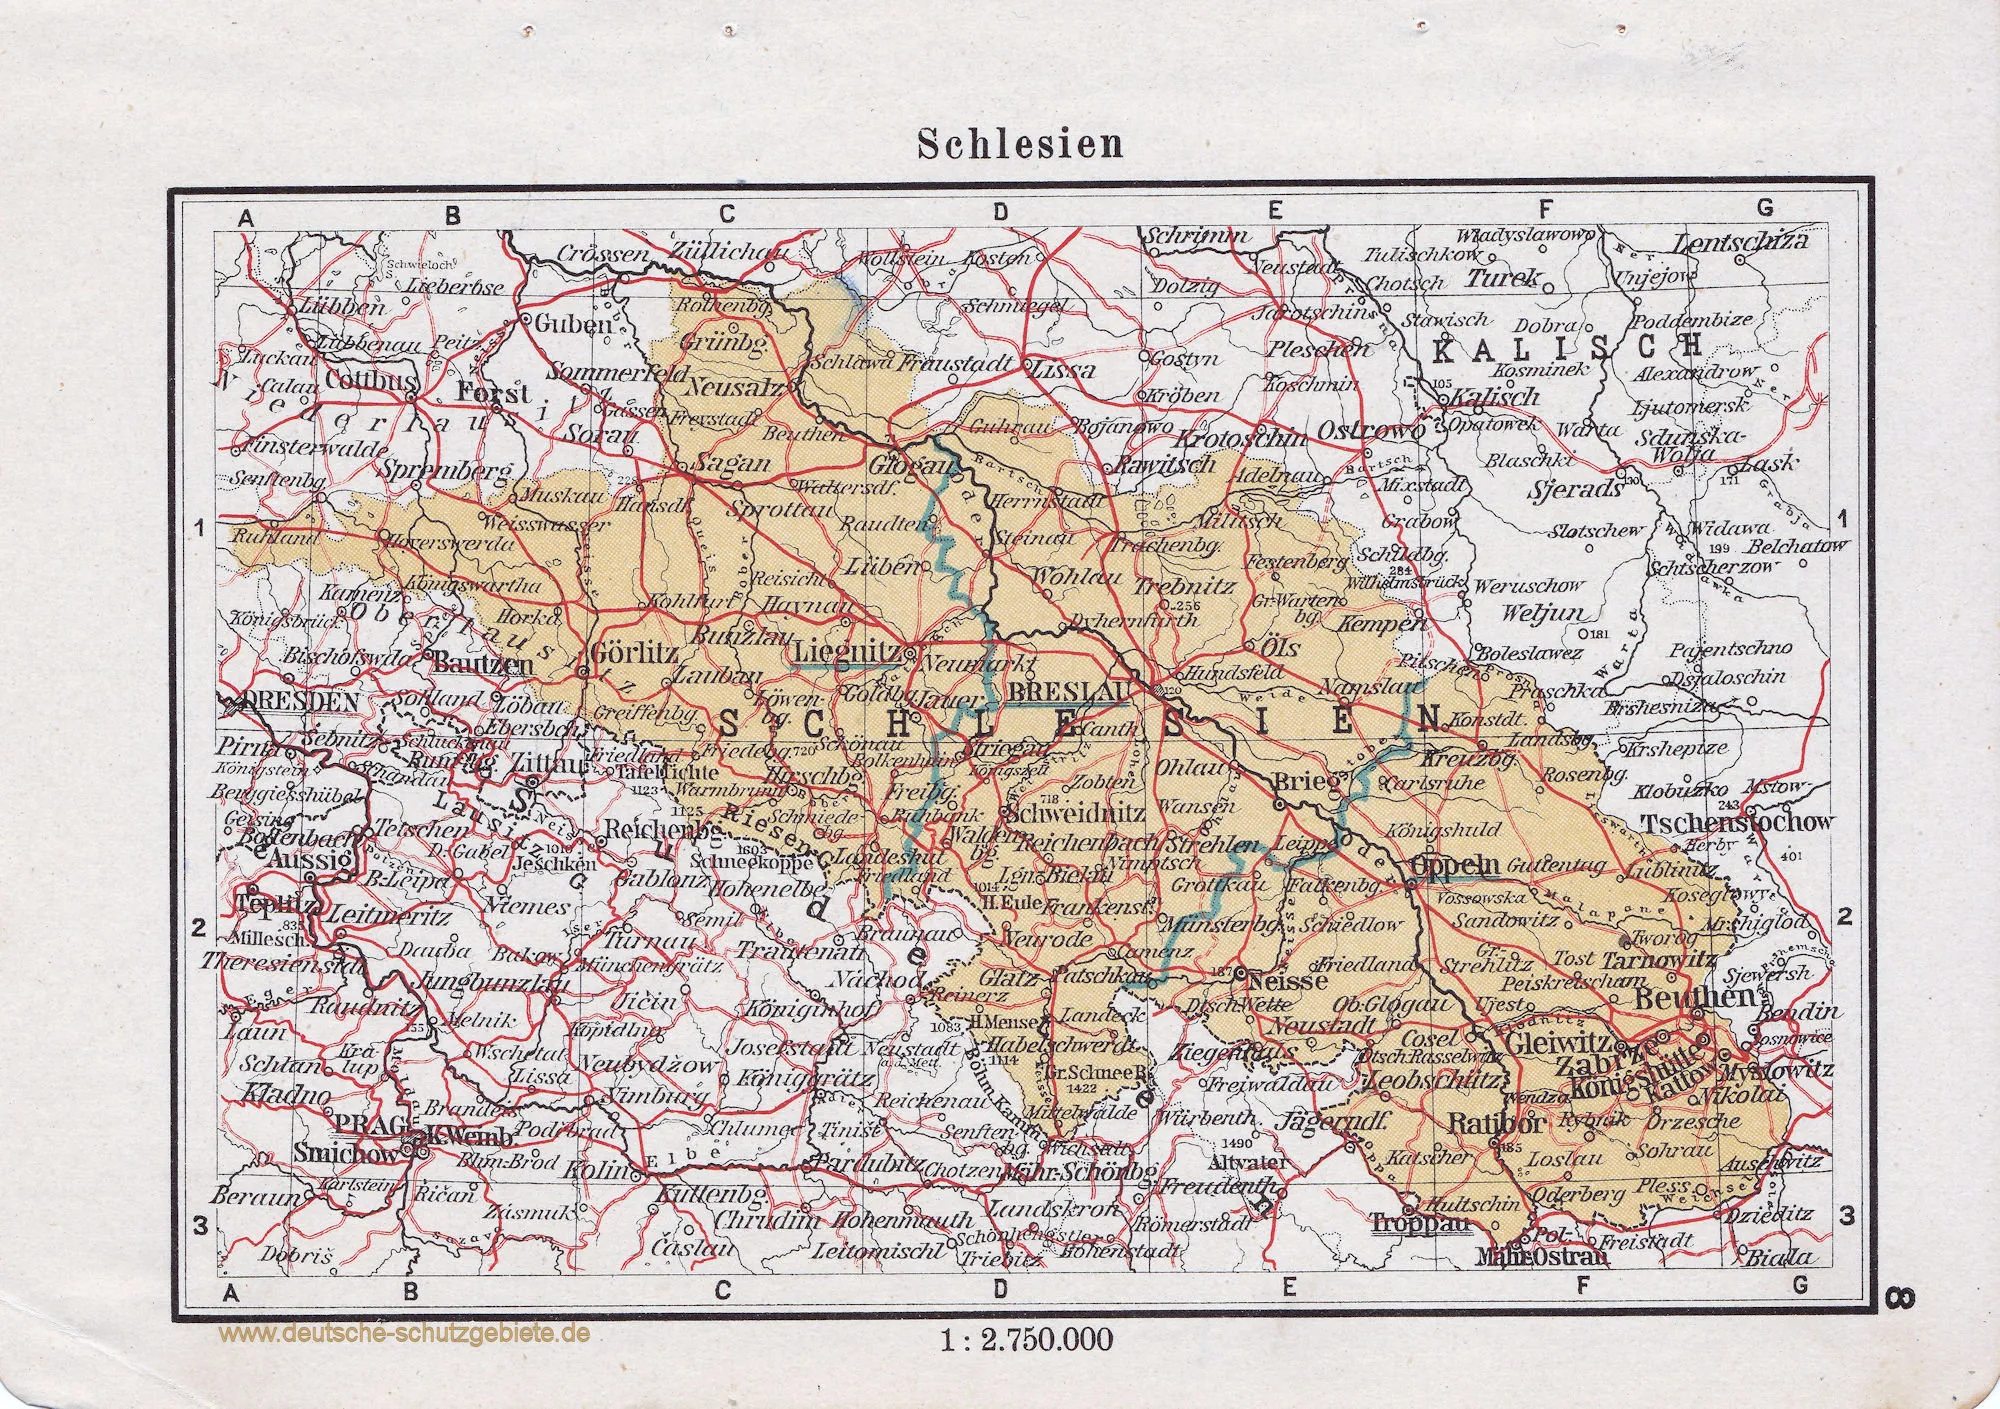 Niemiecka mapa Śląska / Schlesien źródło:  https://deutsche-schutzgebiete.de/